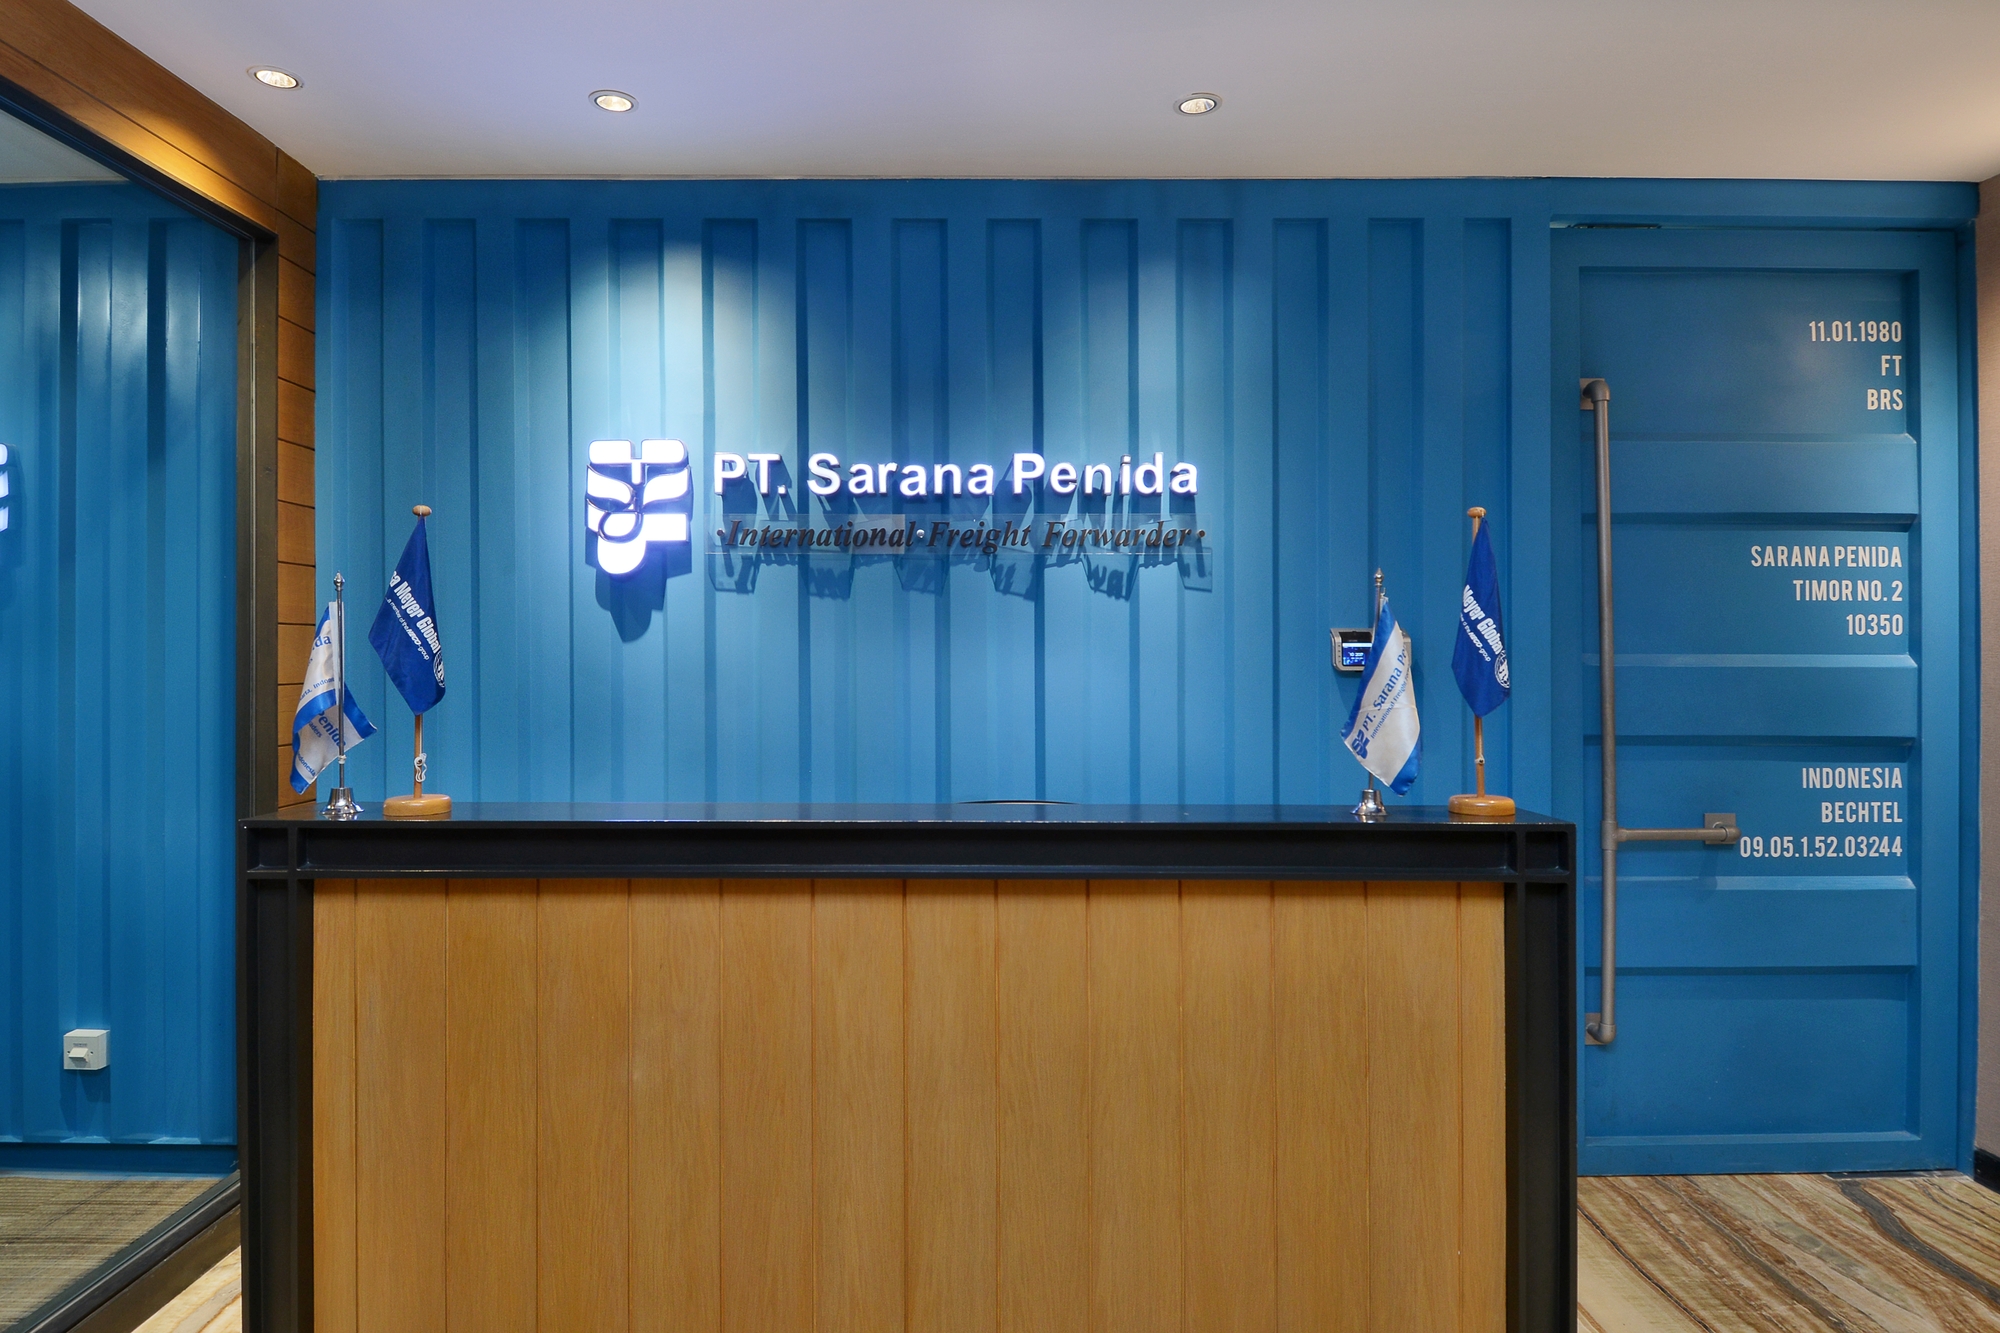 Sarana Penida办事处——雅加达|ART-Arrakis | 建筑室内设计的创新与灵感